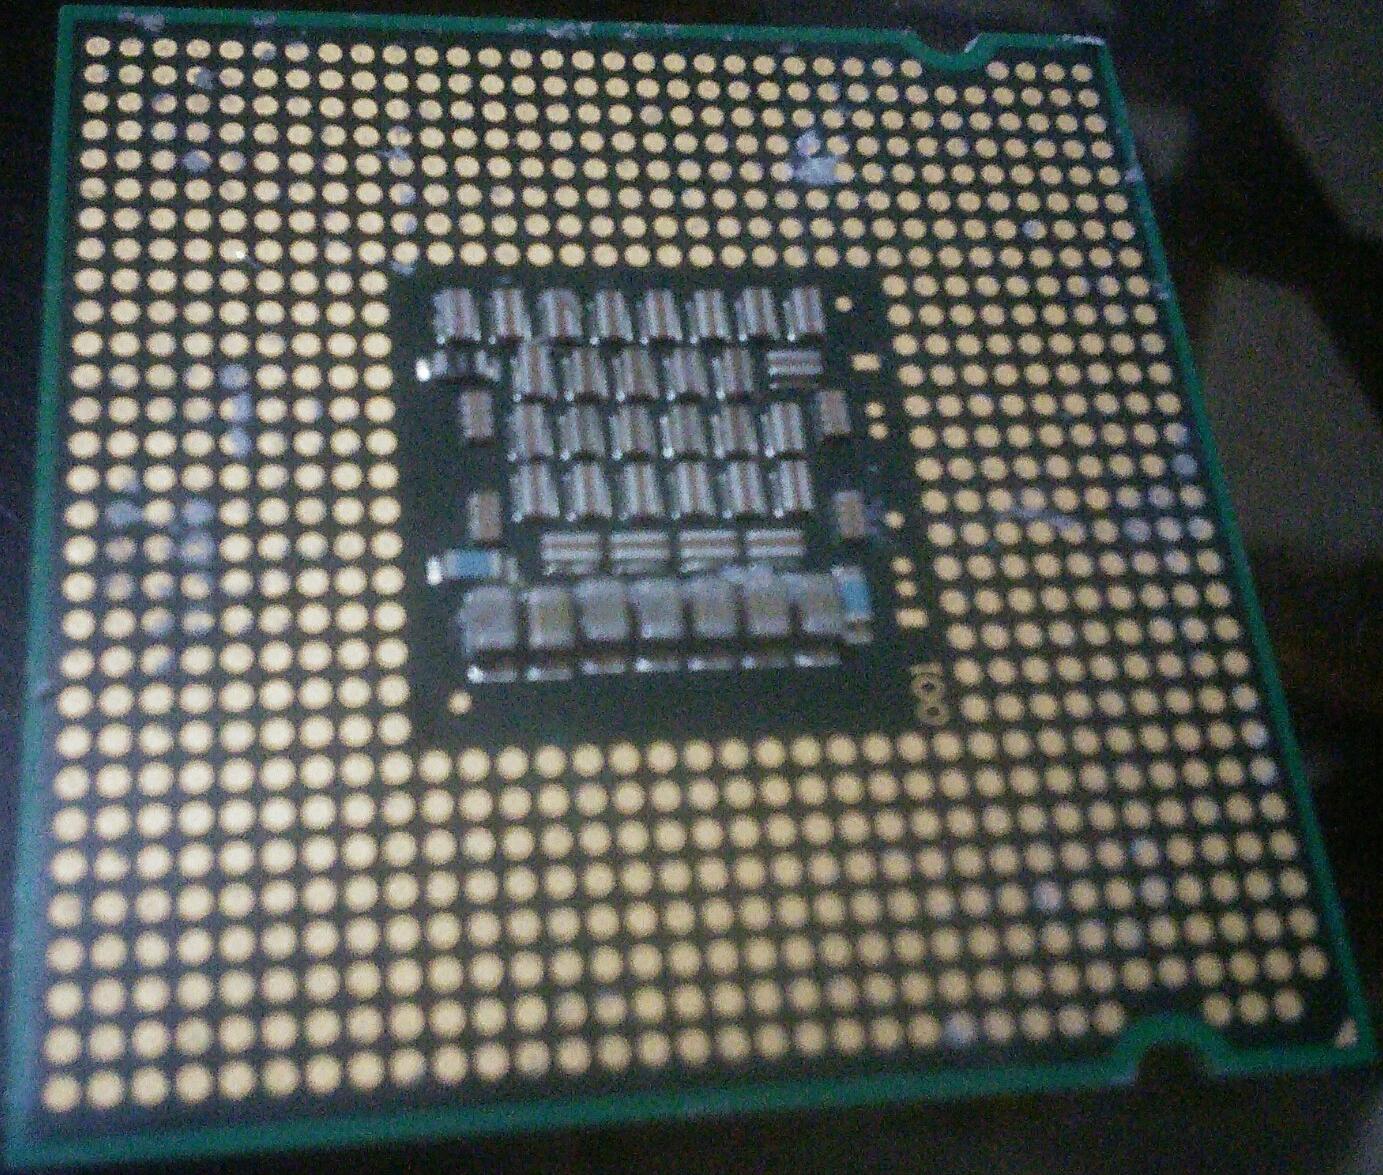 Dirty CPU